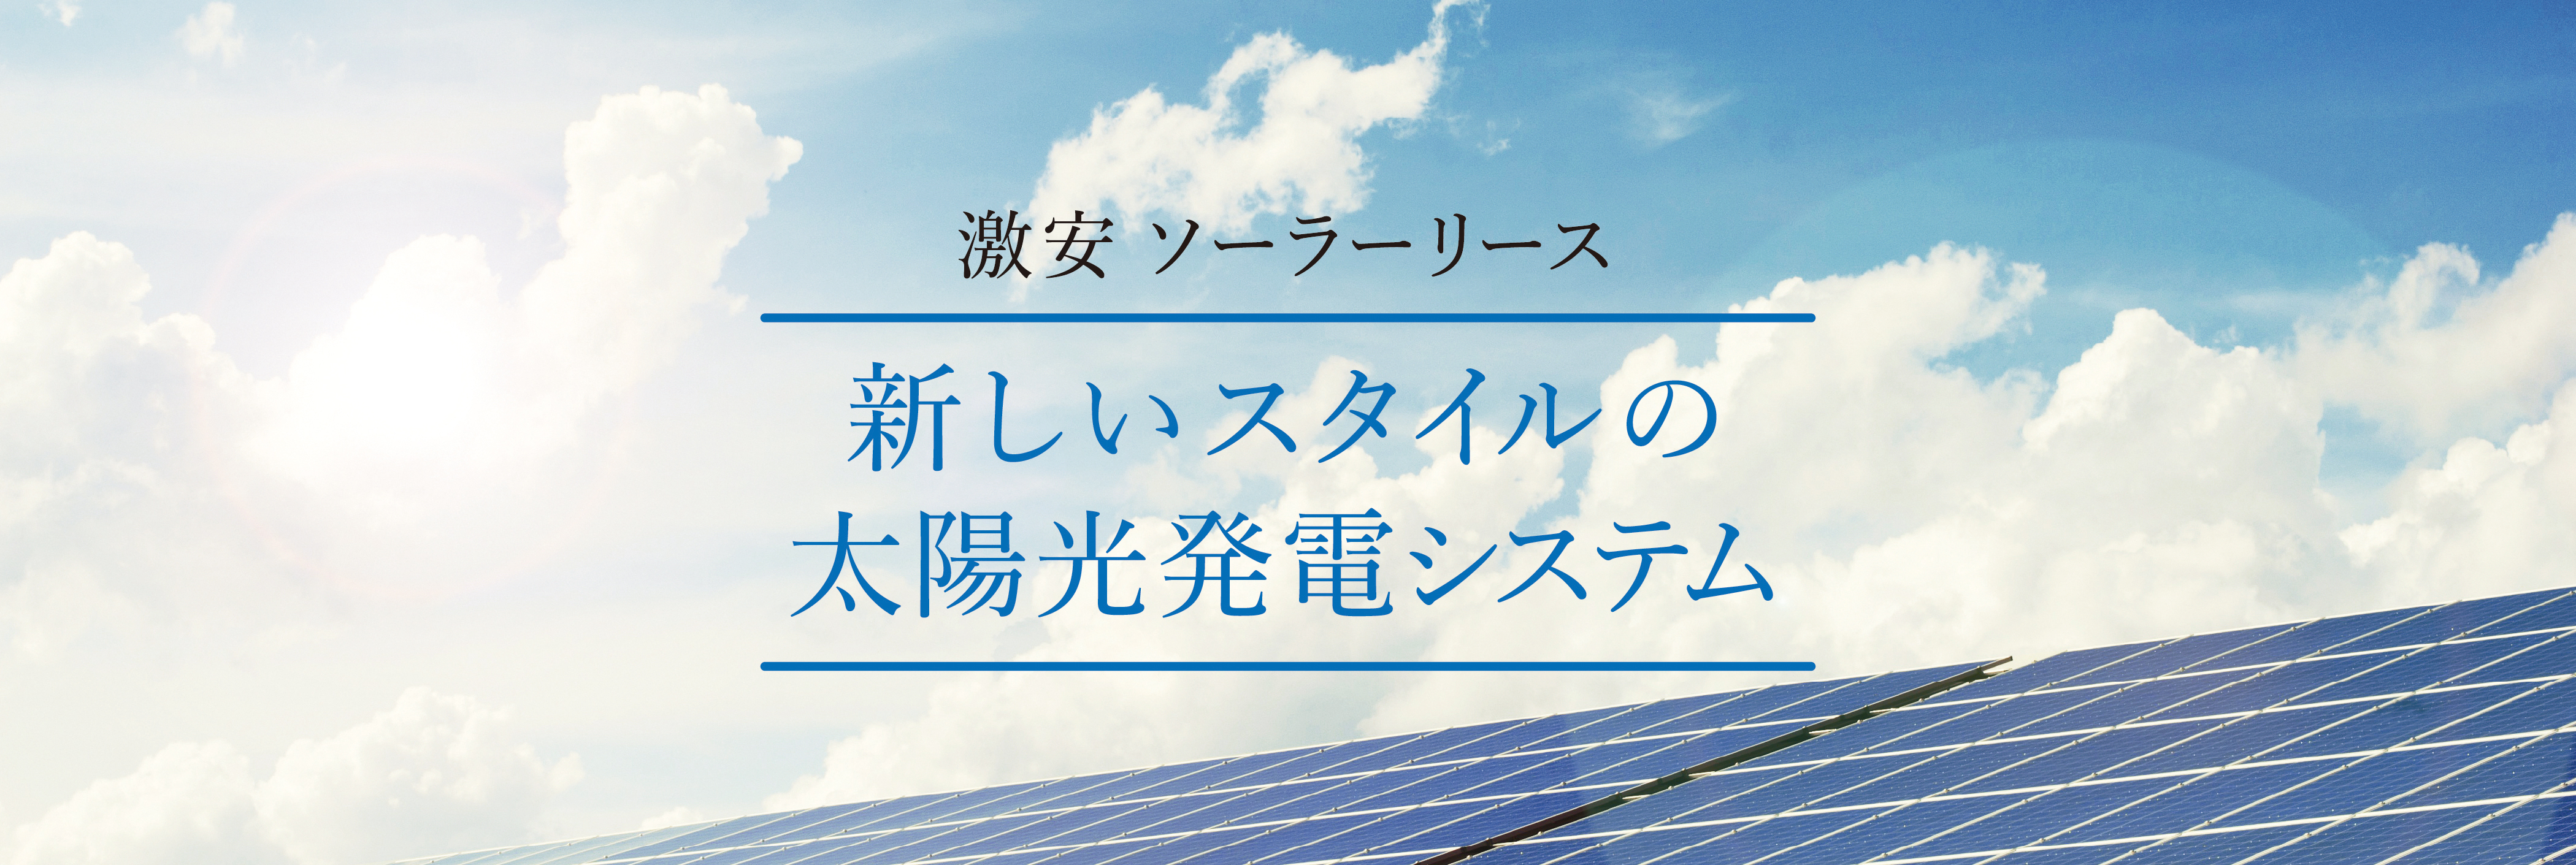 エナジーソリューションの激安ソーラーリース、新しいスタイルの太陽光発電システム